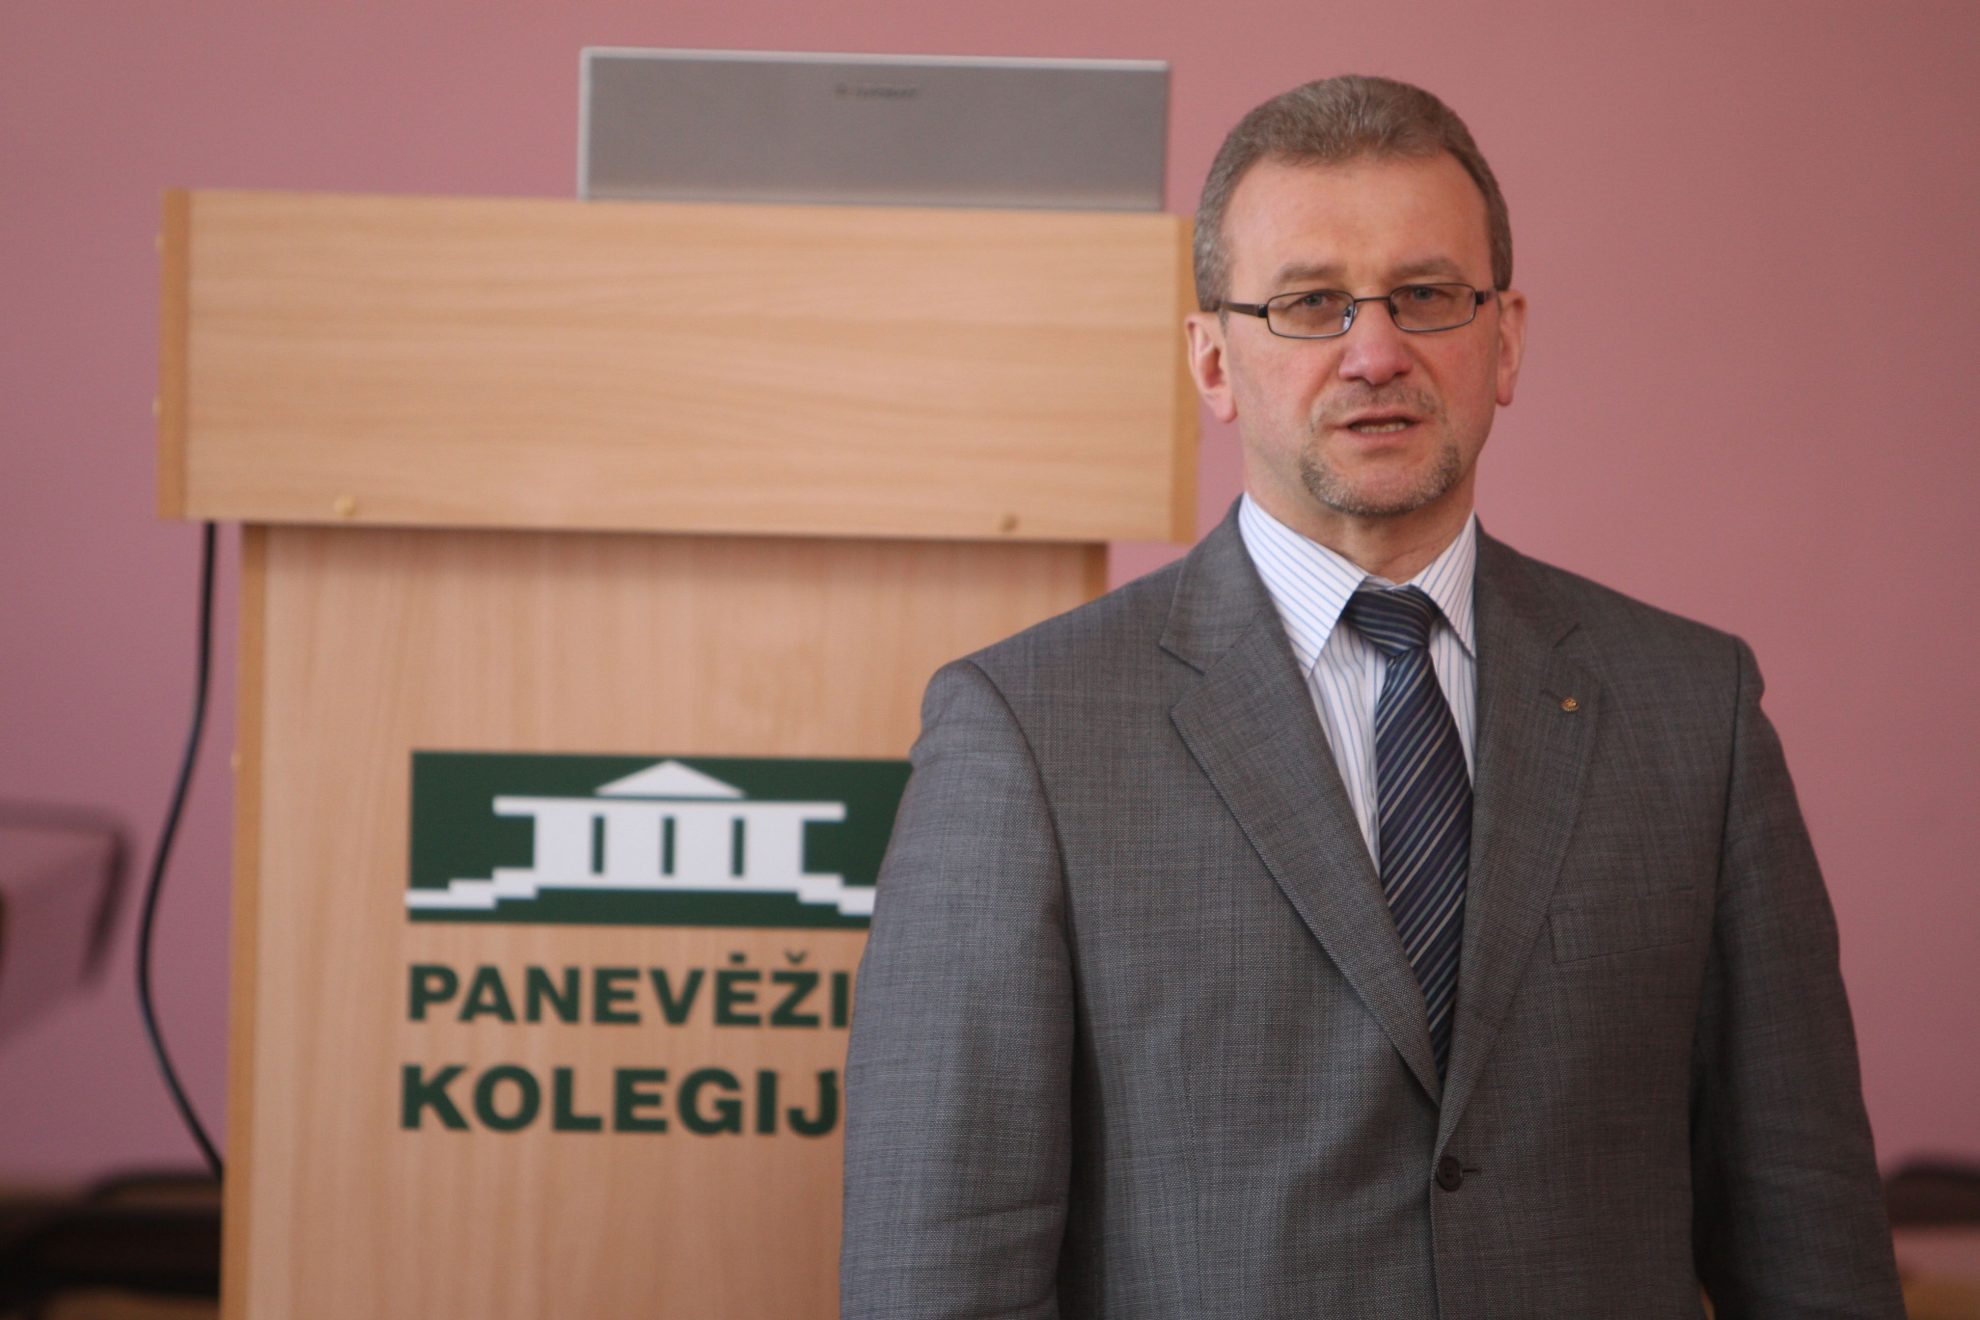 Vyriausioji tarnybinės etikos komisija (VTEK) pradėjo tyrimą dėl VšĮ Panevėžio kolegijos direktoriaus Gedimino Sargūno elgesio.